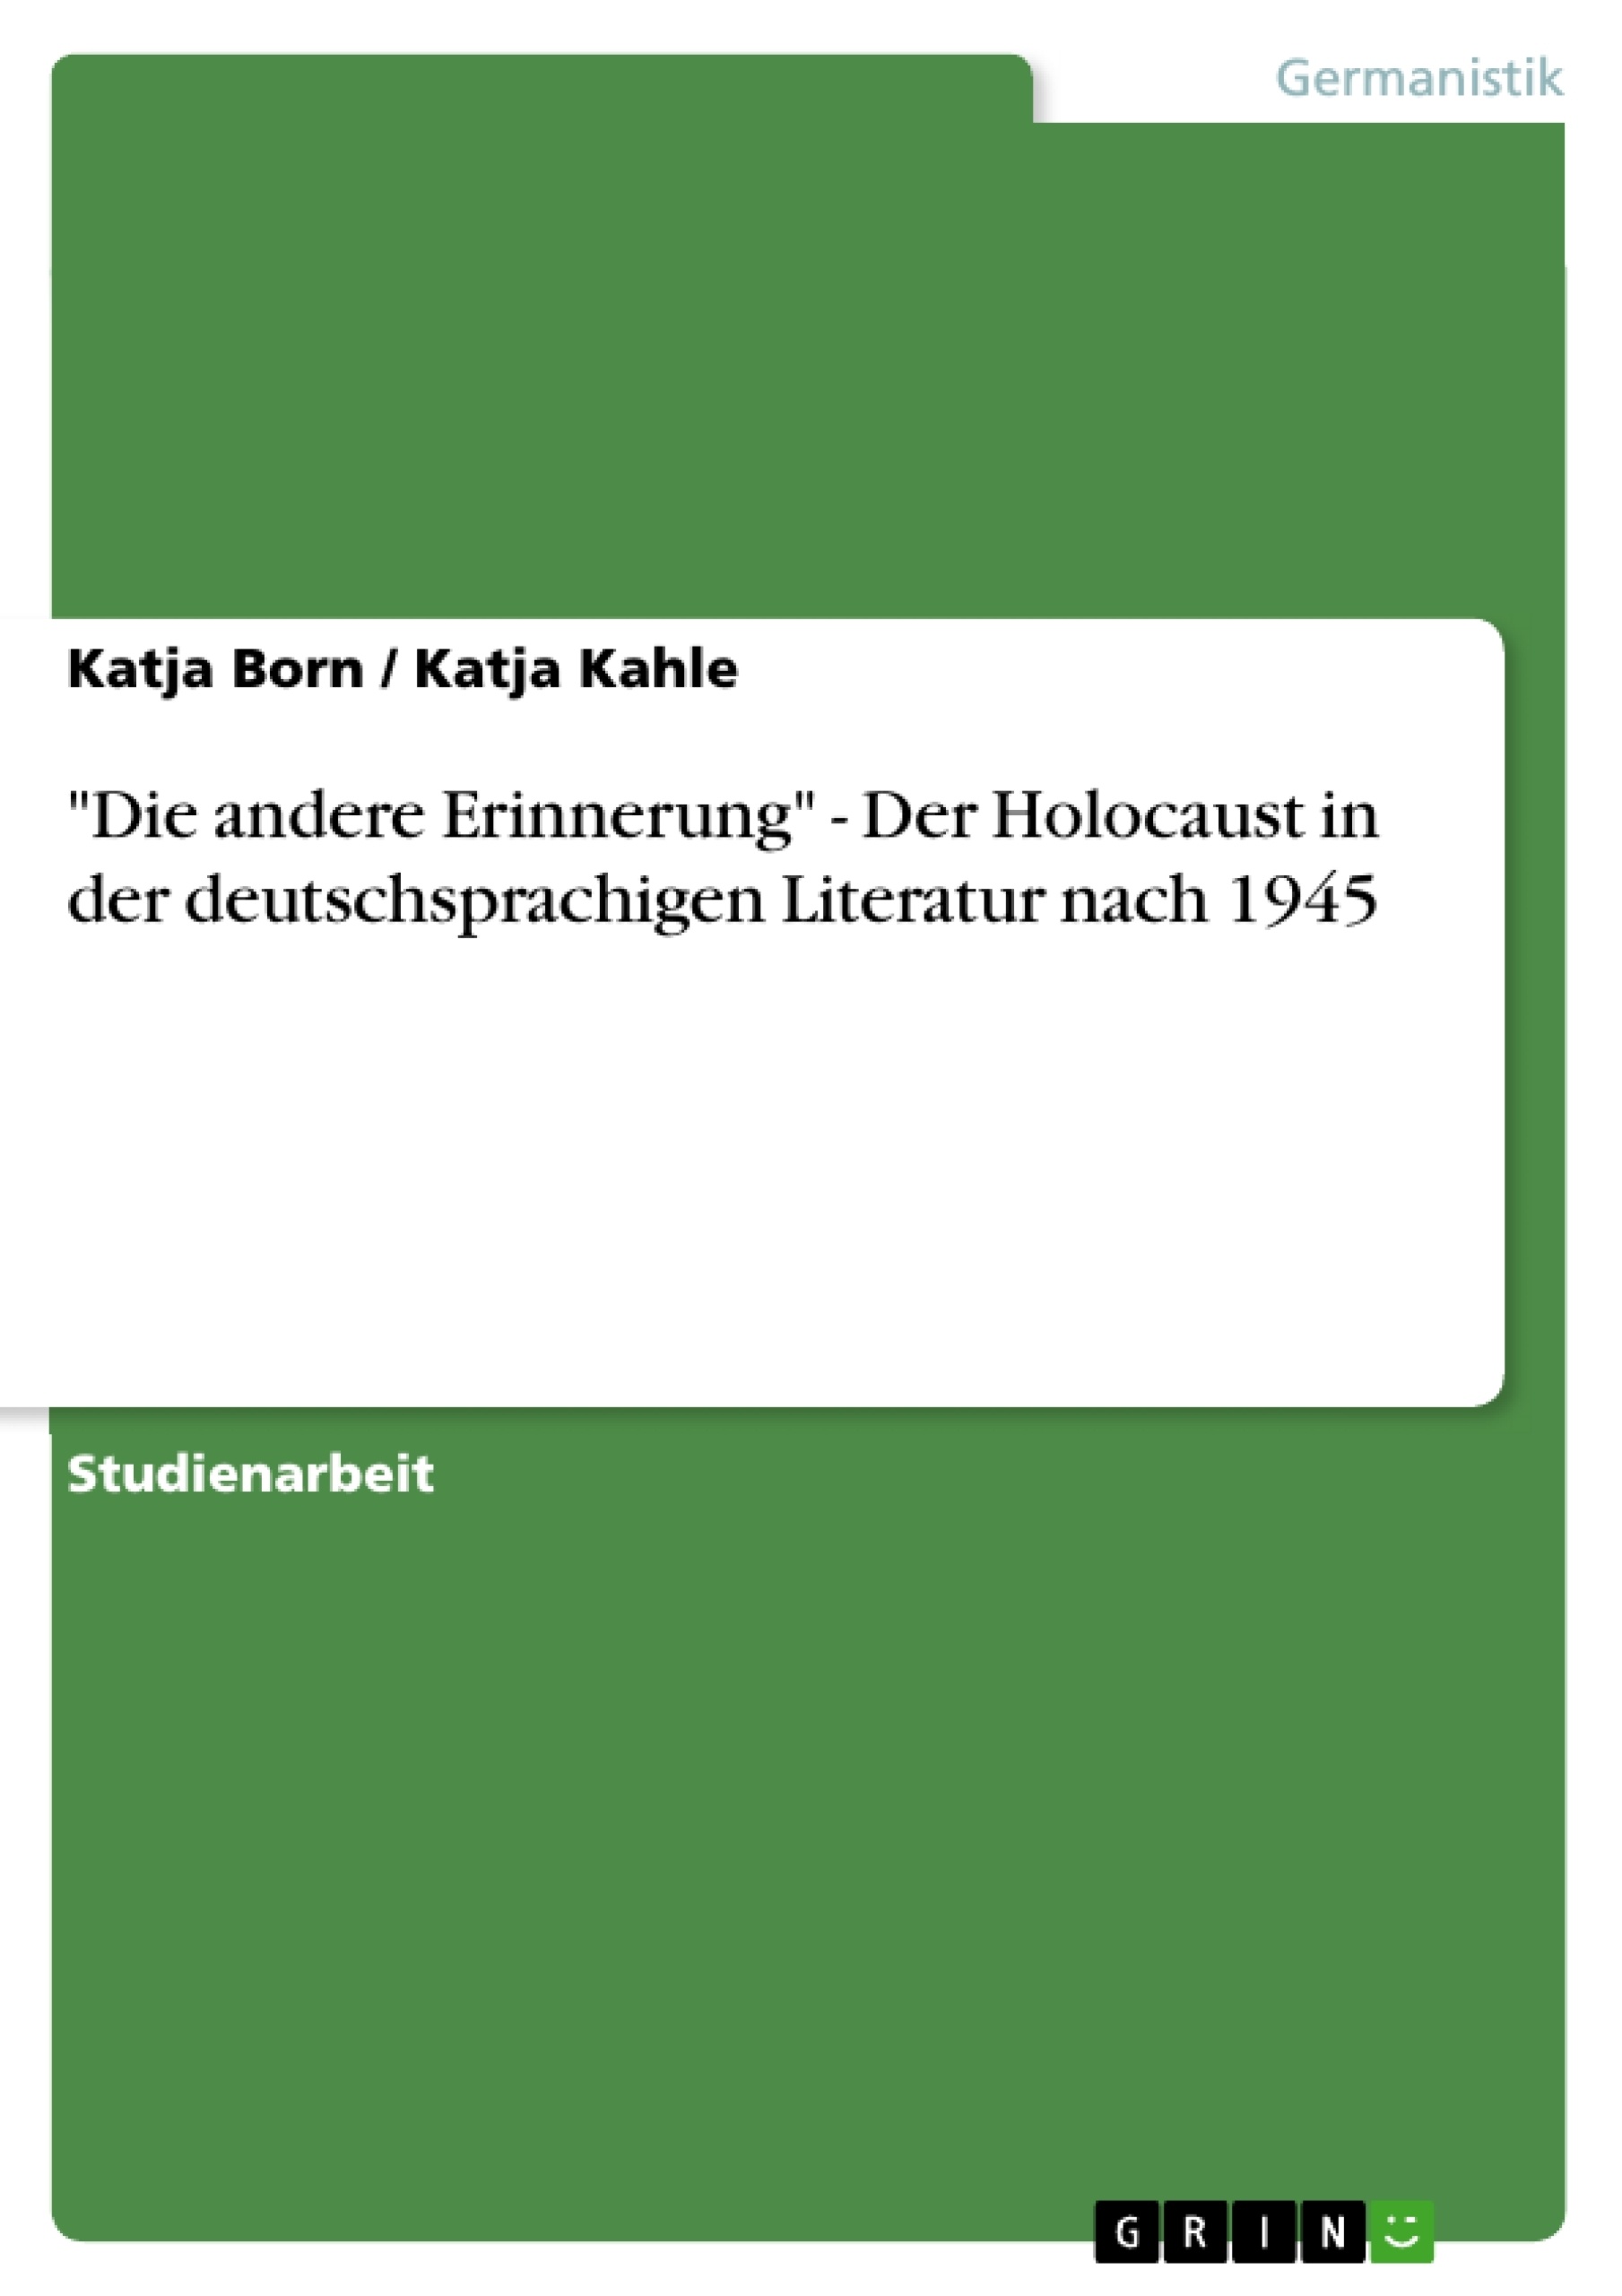 Title: "Die andere Erinnerung" - Der Holocaust in der deutschsprachigen Literatur nach 1945